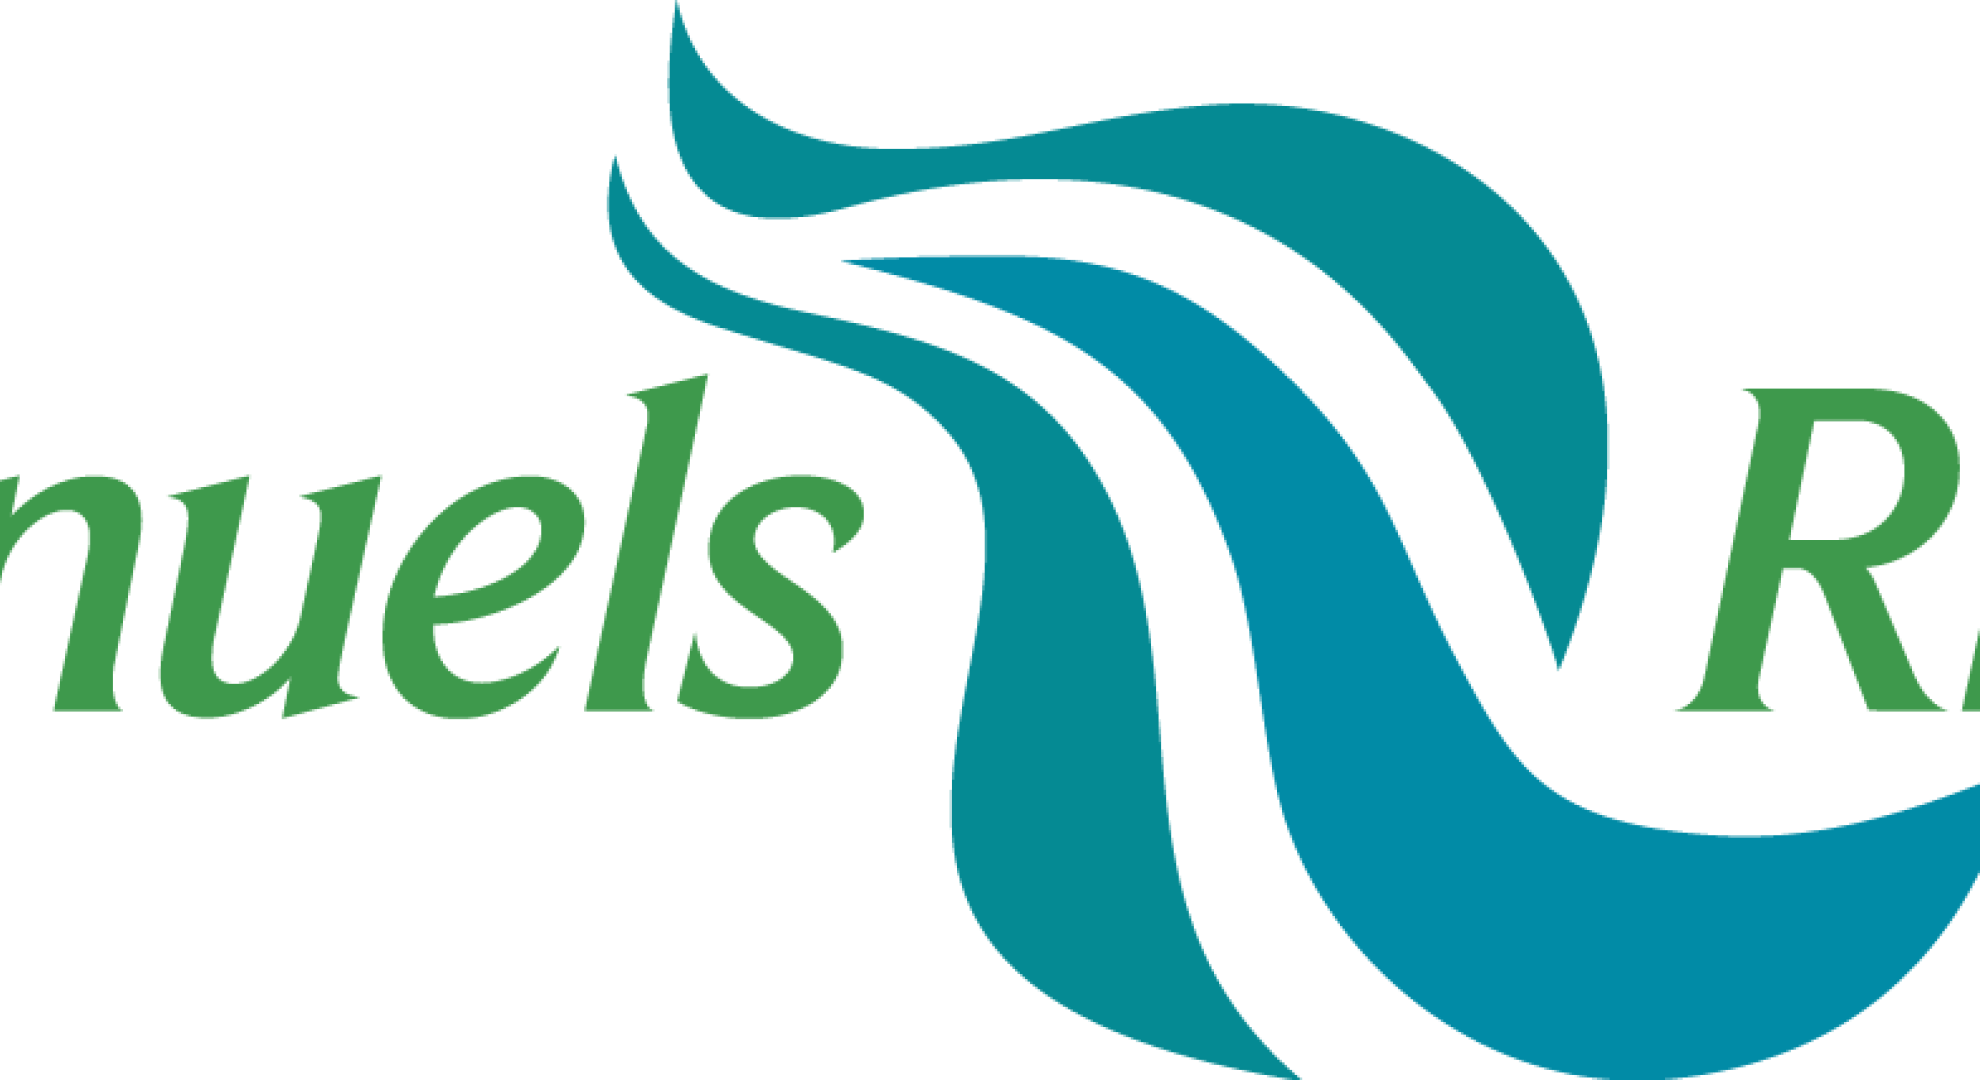 Manuels River Logo